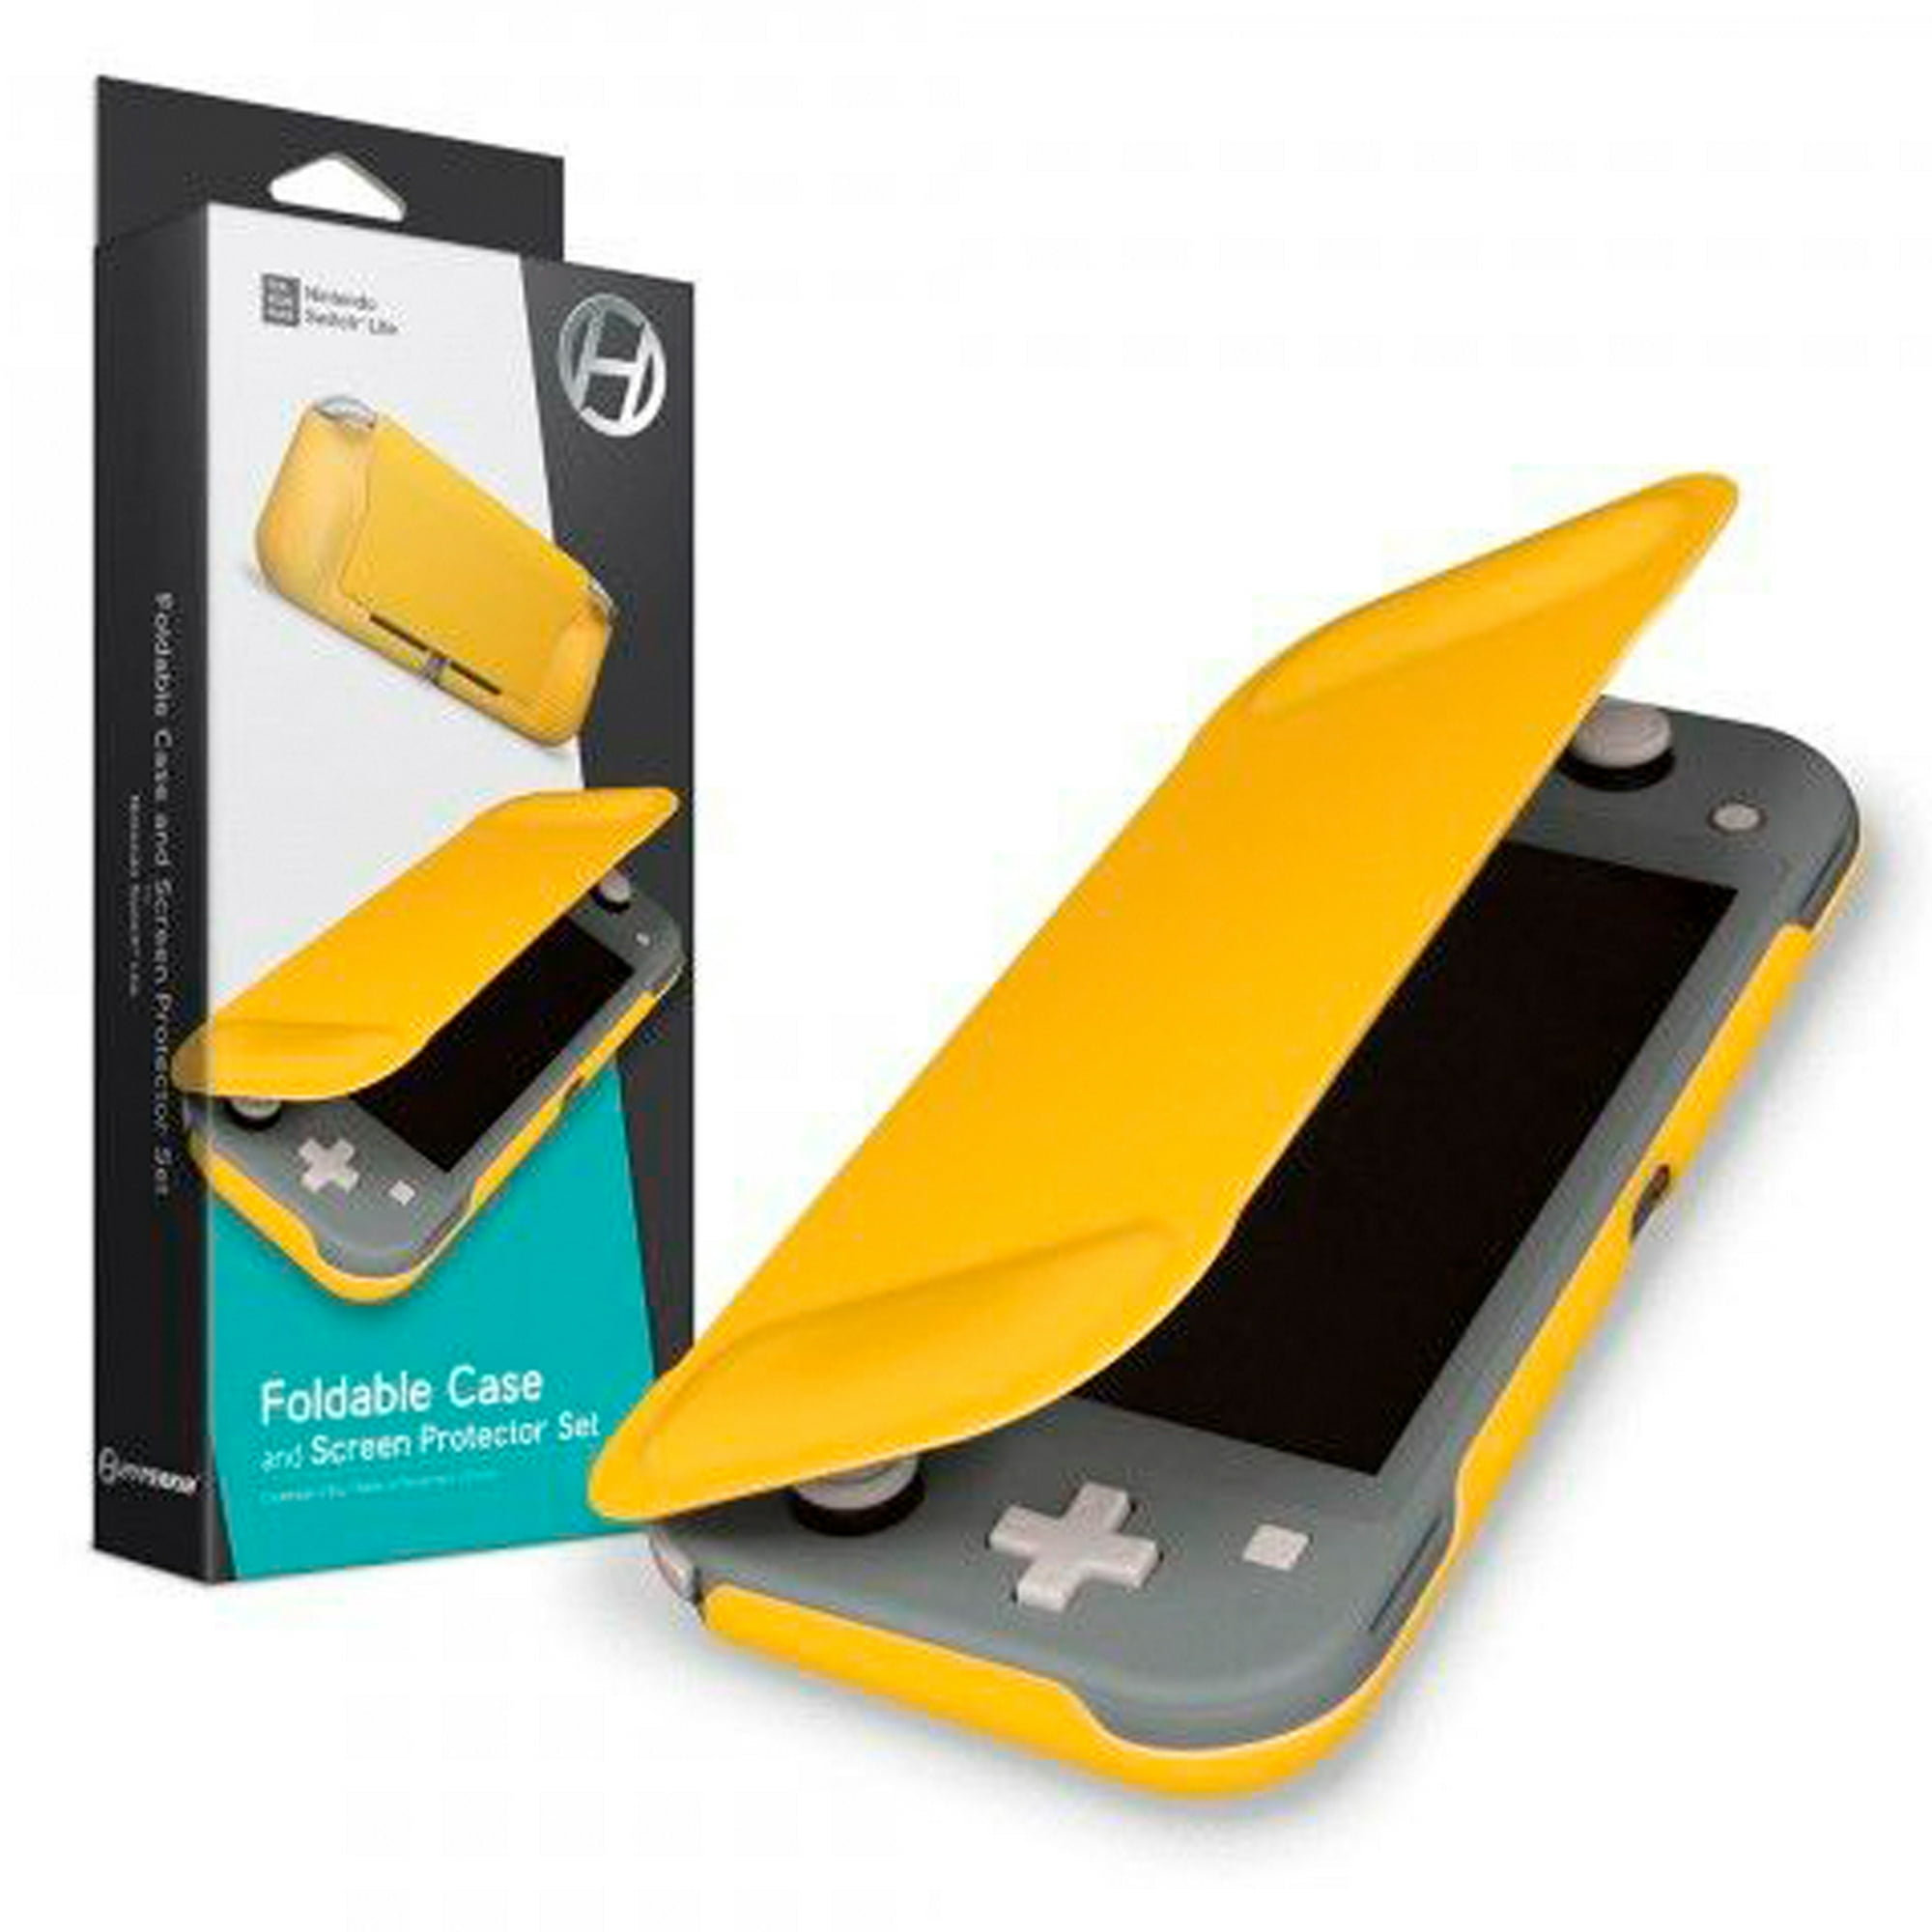 Paquete de accesorios de funda Switch Lite con funda Nintendo Switch Lite,  accesorios Nintendo Switch, para juegos Switch Lite. Paquete completo